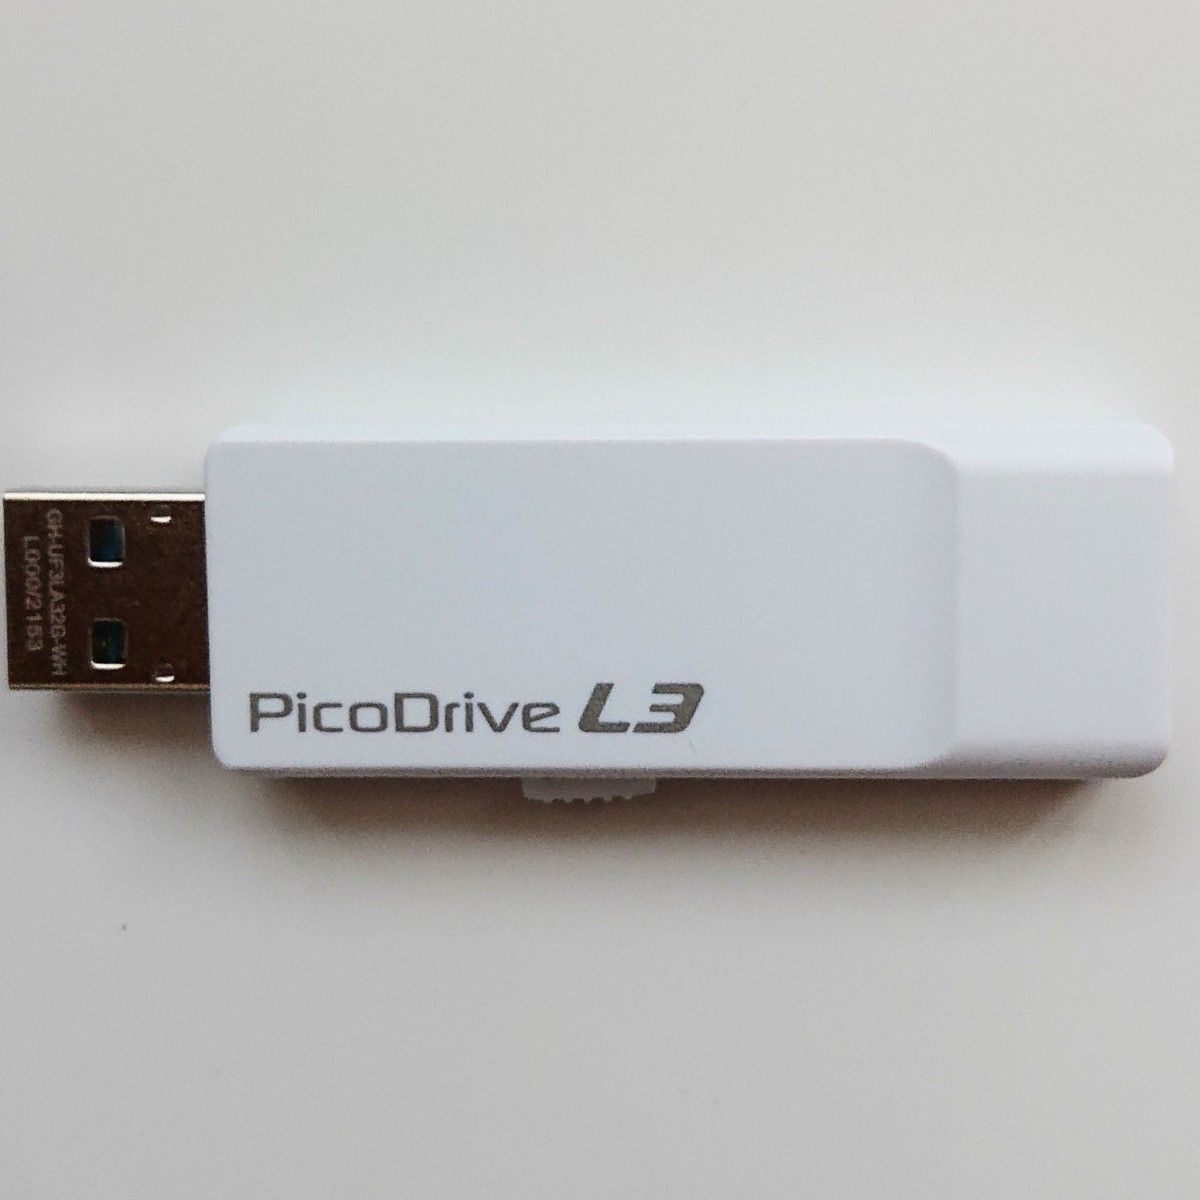 値下げ ピコドライブ L3 32GB USBメモリー 新品・未使用